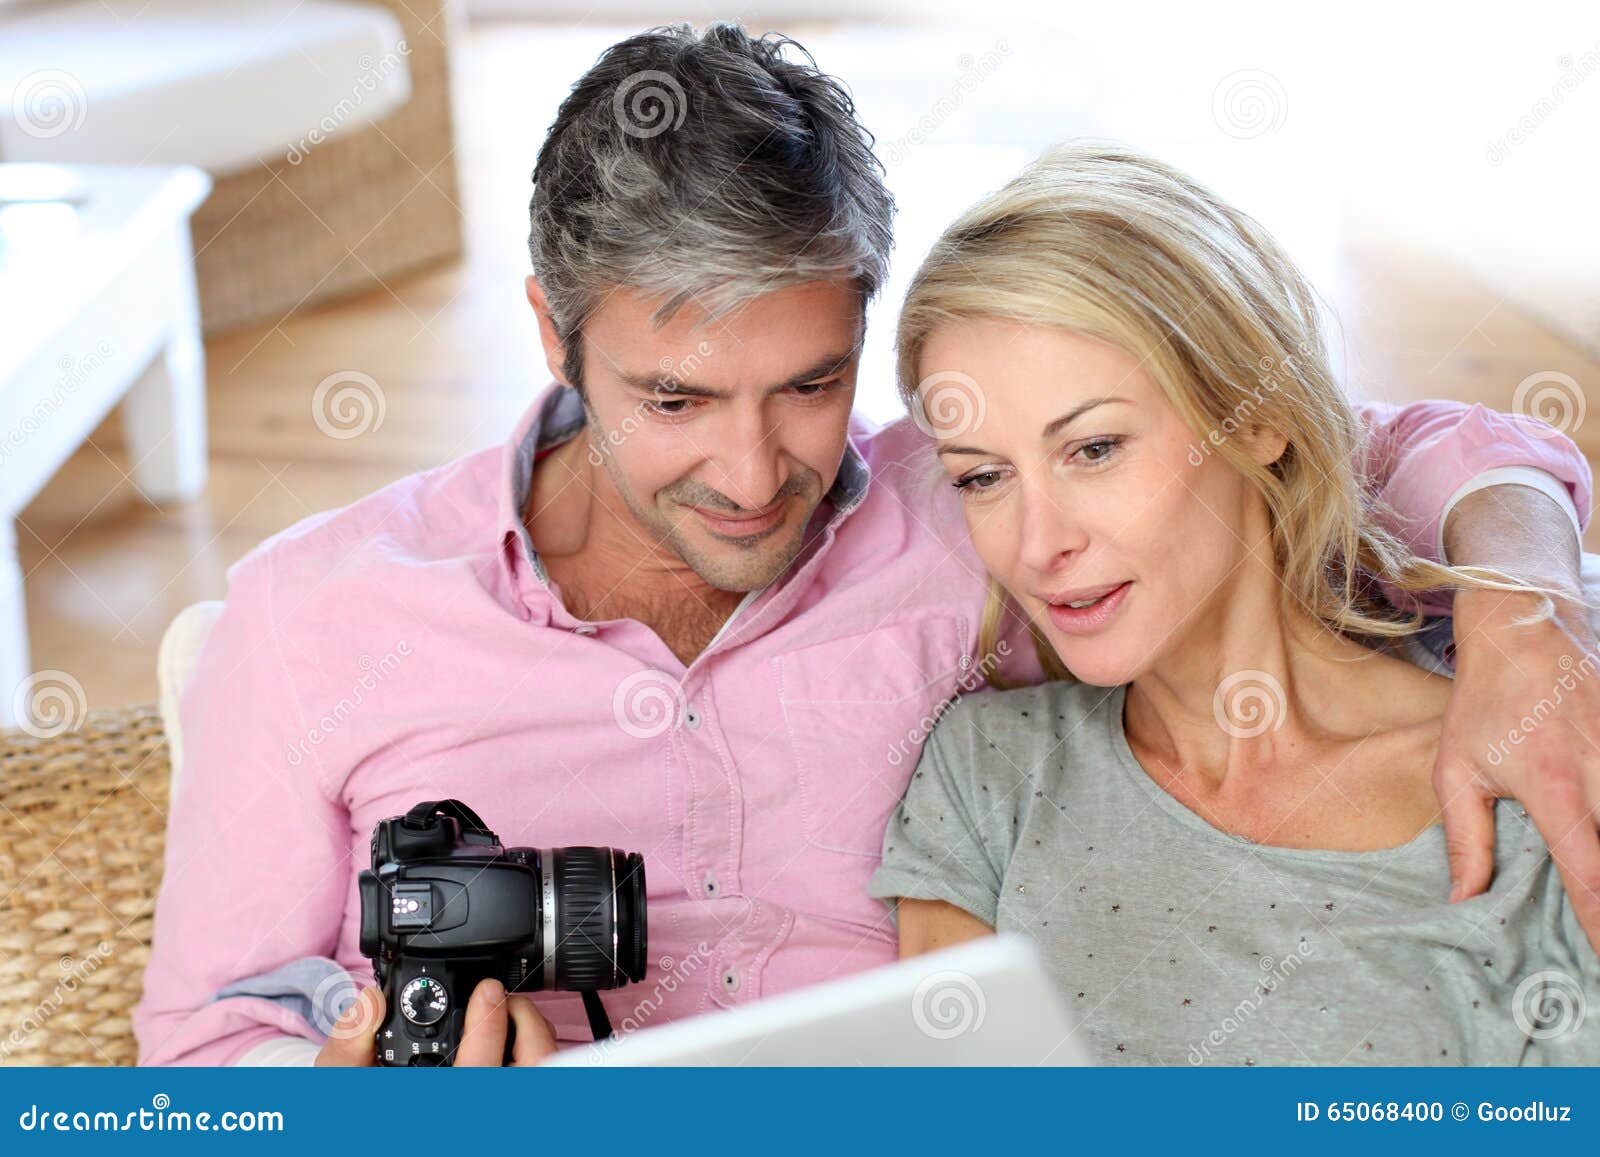 Couples Amateur Video